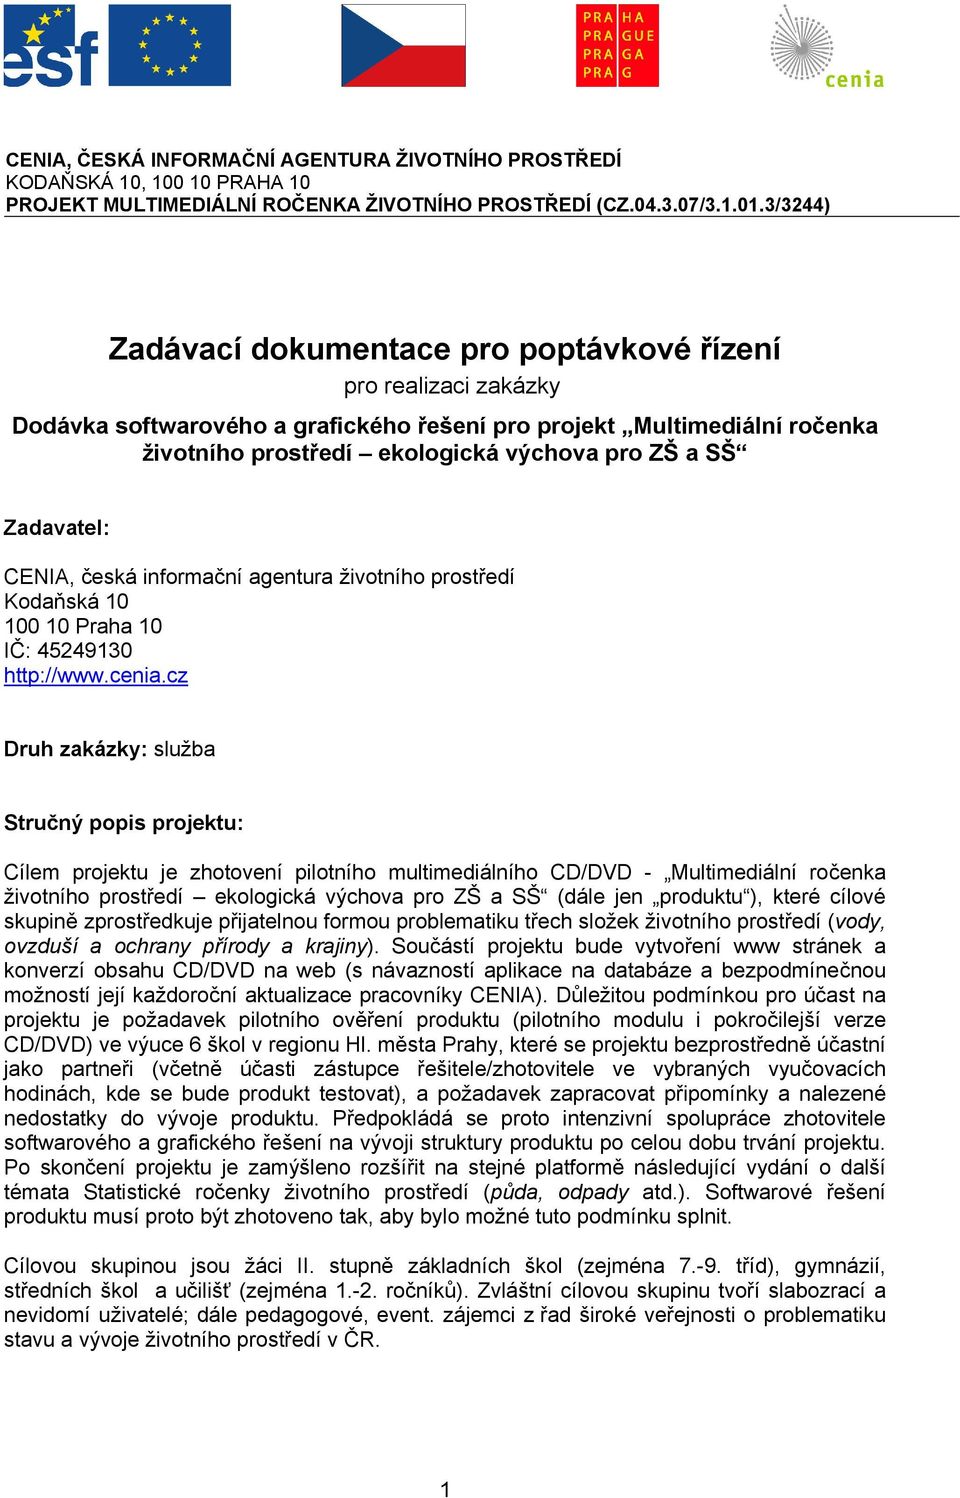 Zadavatel: CENIA, česká informační agentura životního prostředí Kodaňská 10 100 10 Praha 10 IČ: 45249130 http://www.cenia.